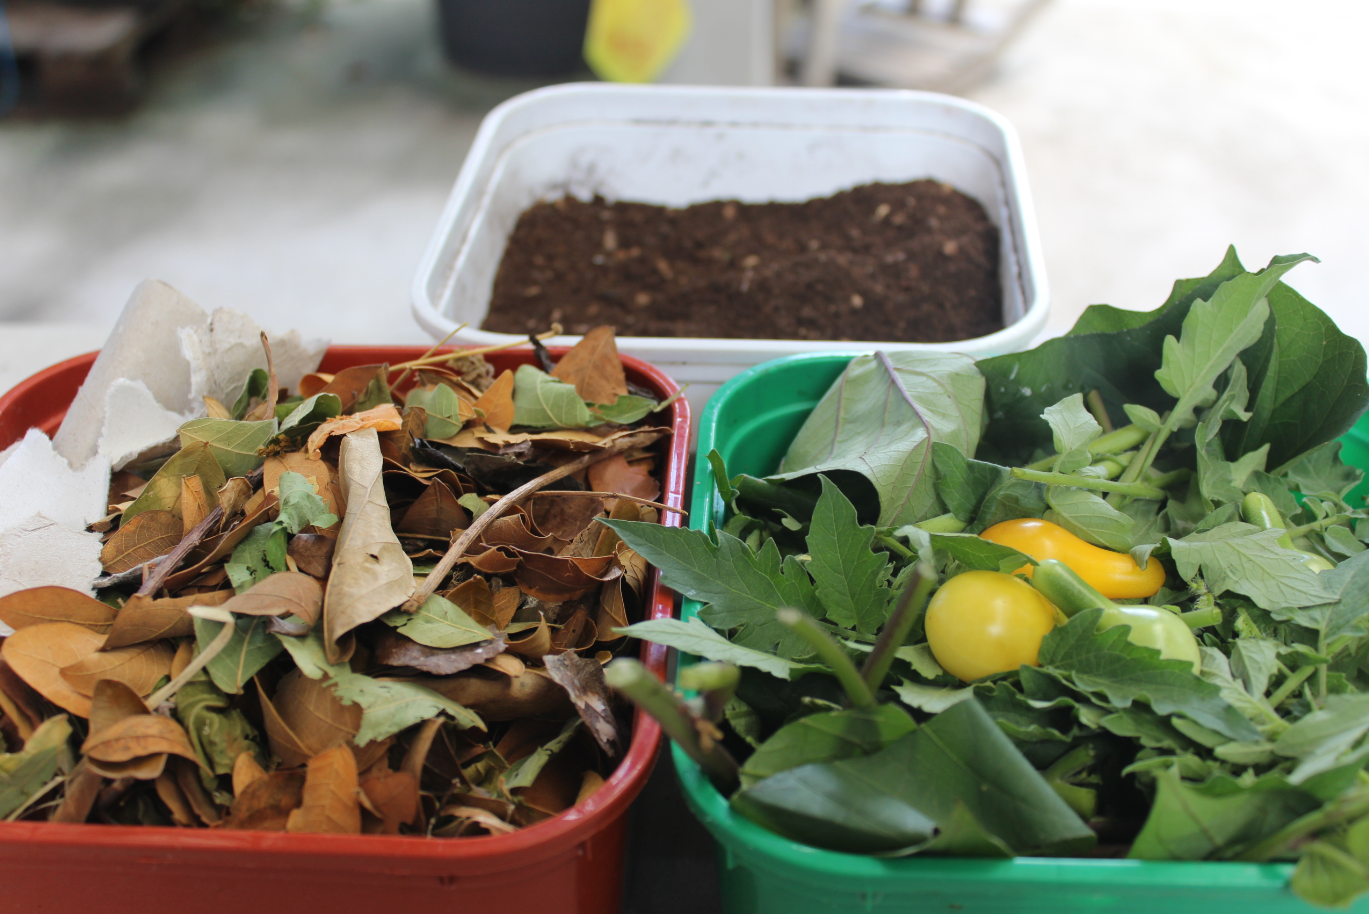 Matière brune + matière humide donne le compost.